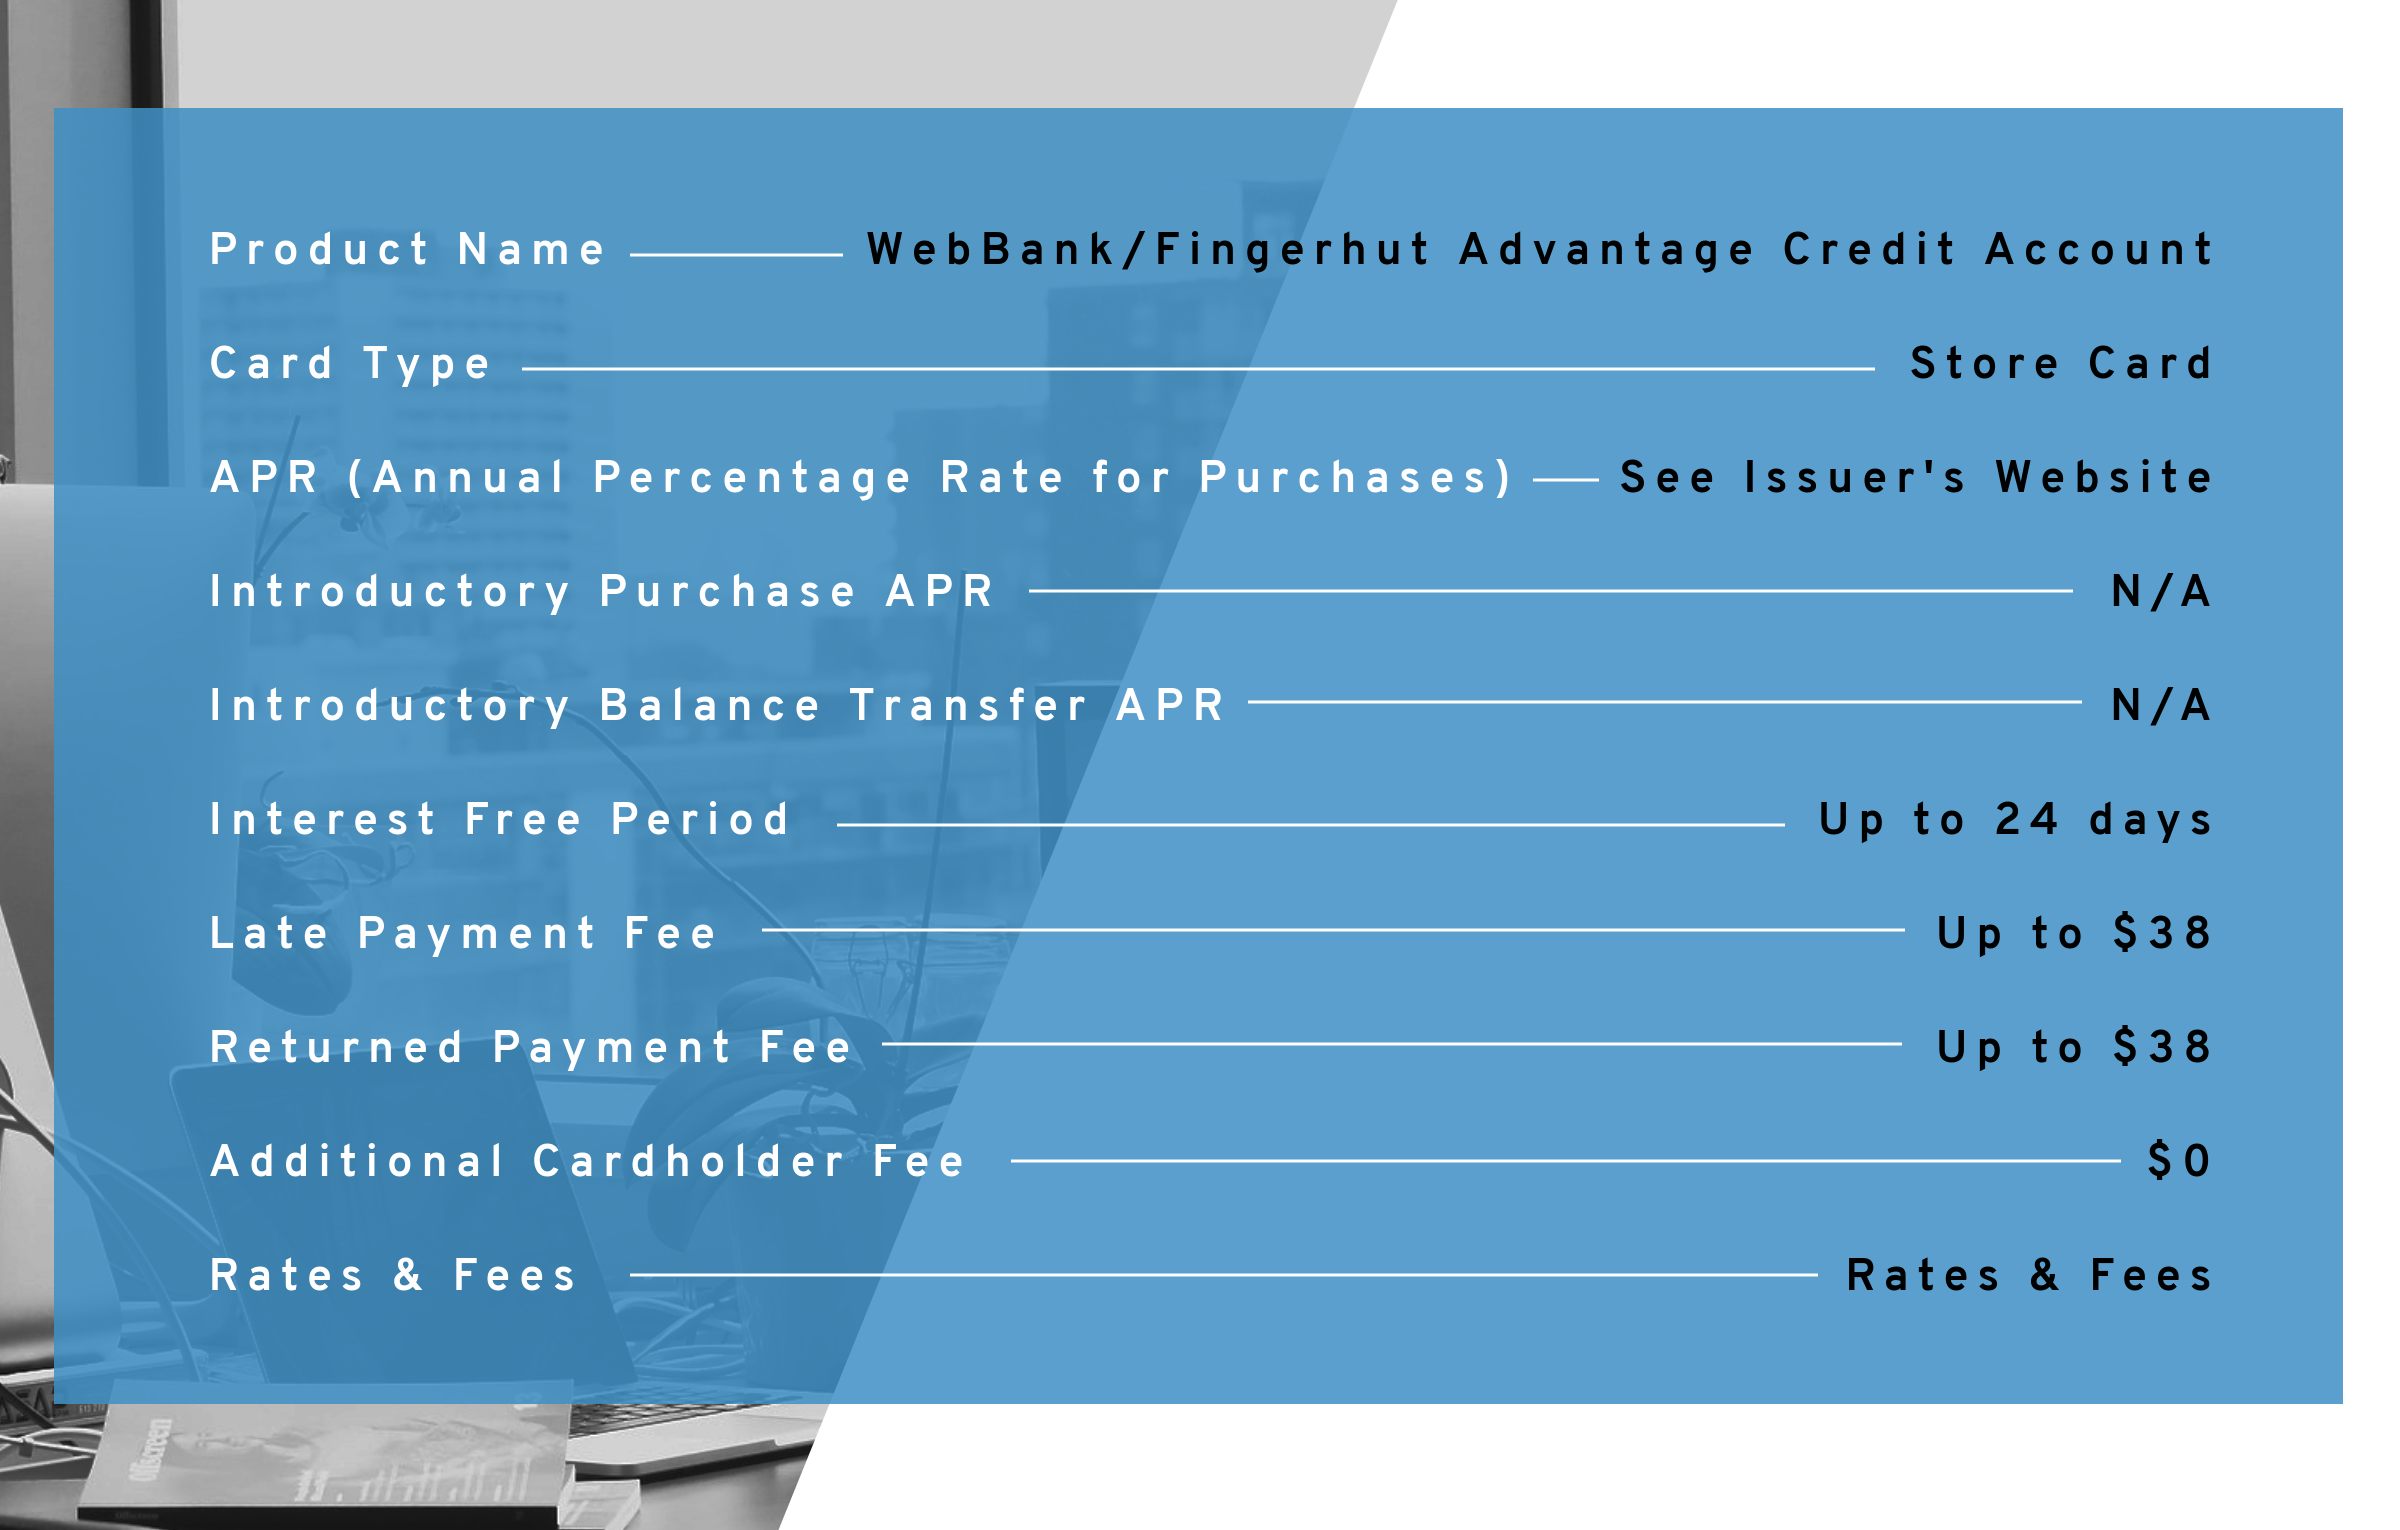 Fingerhut Payment Chart 2018